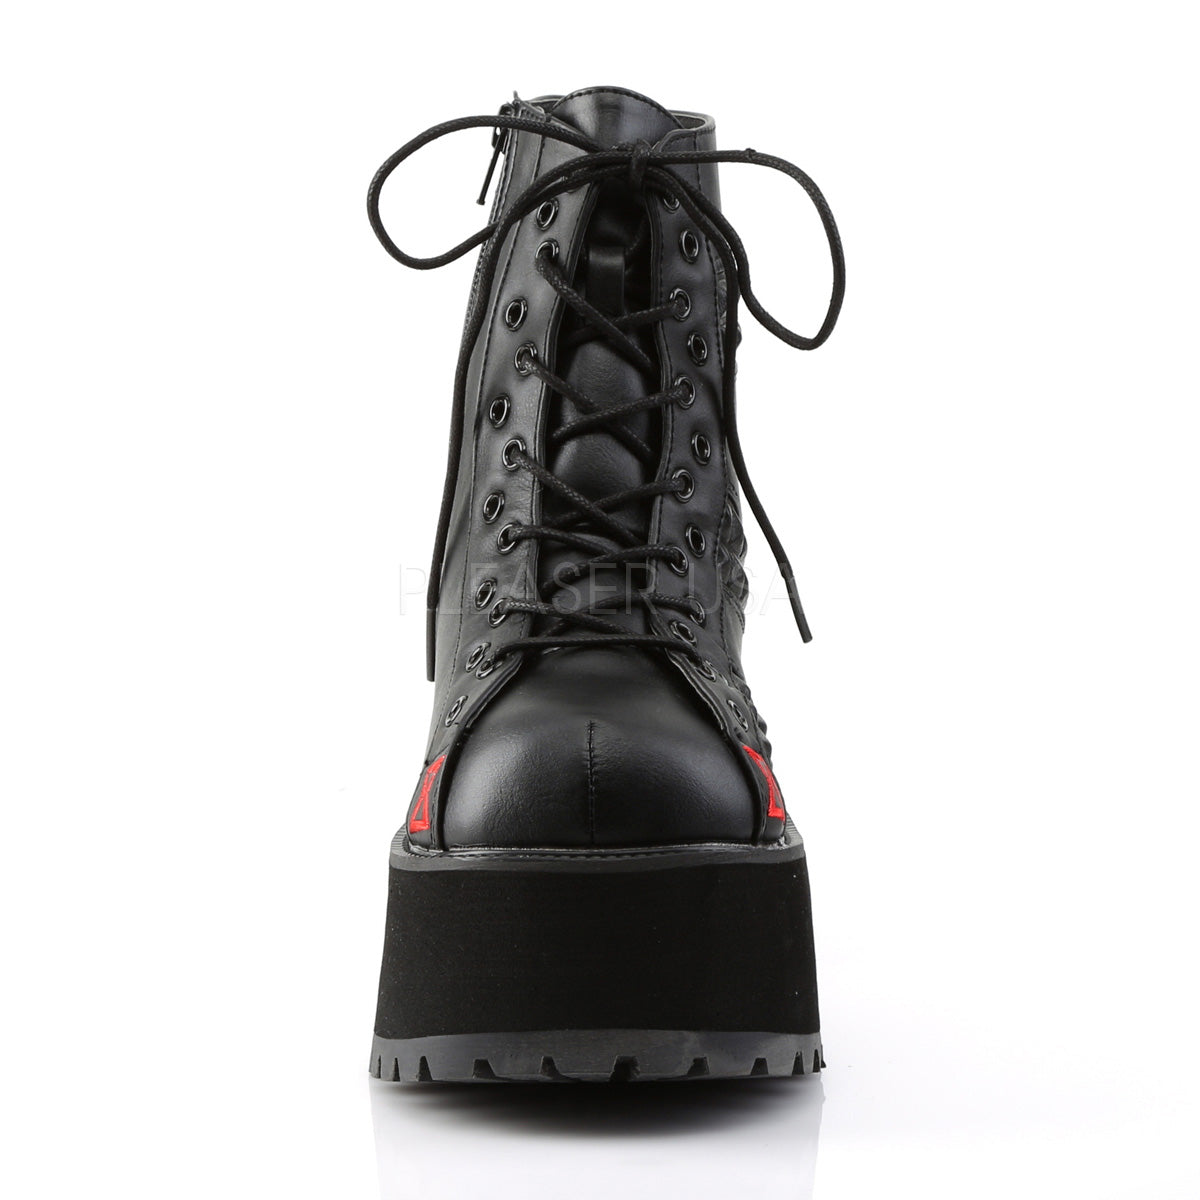 Black Widow Ranger Boots